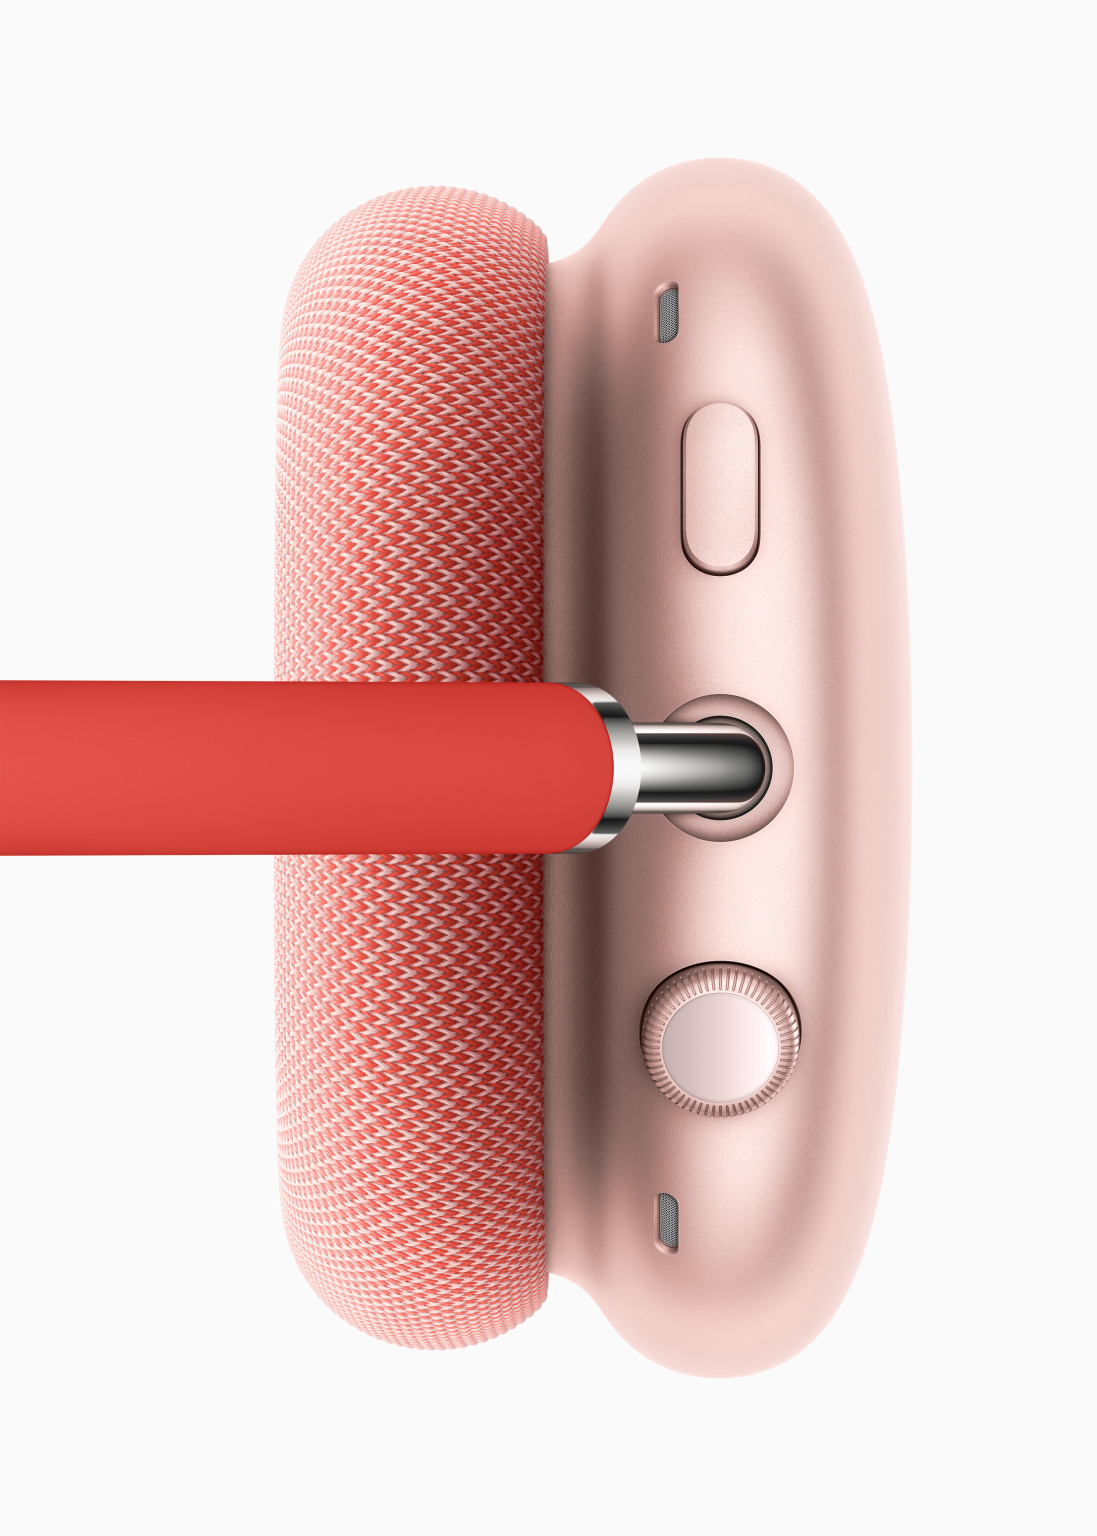 Apple annuncia le AirPods Max: cuffie over-ear dal prezzo spaventoso 2